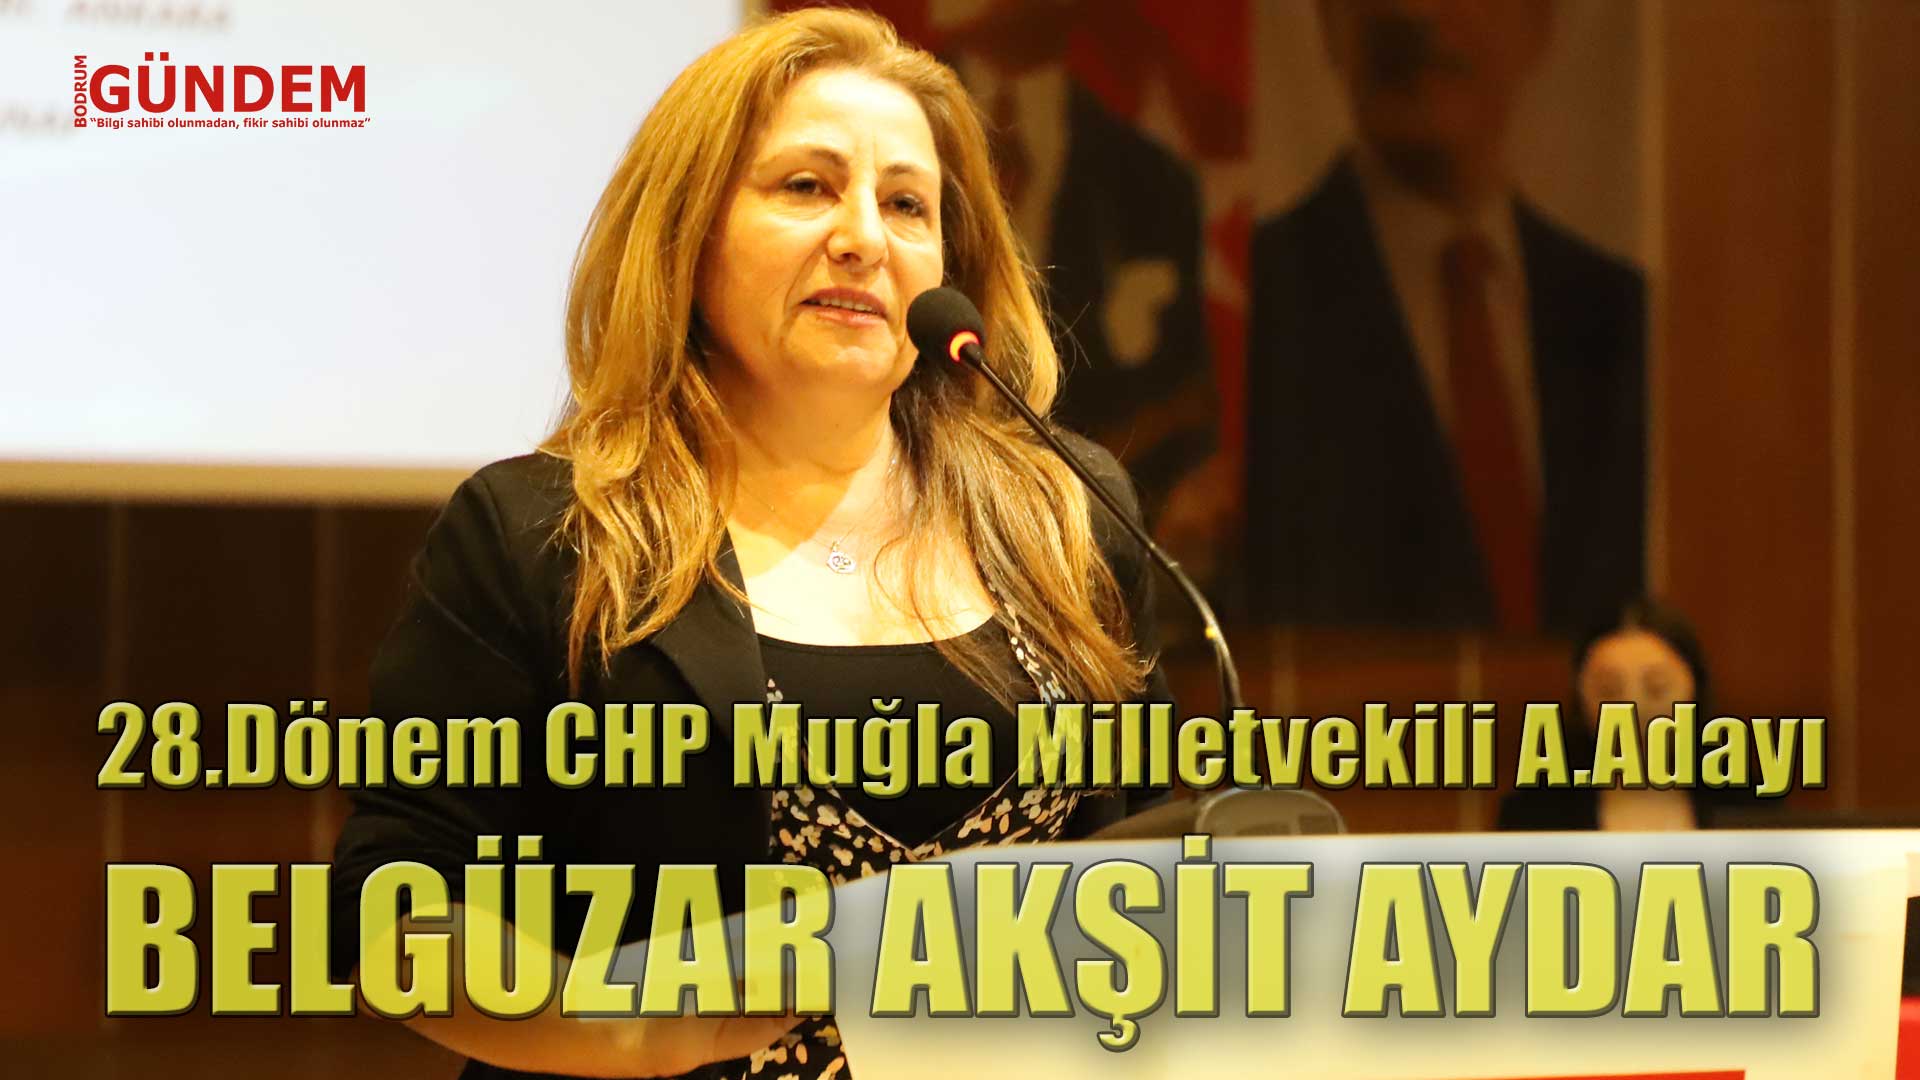 Belgüzar Akşit Aydar 28.Dönem CHP Muğla – Bodrum Milletvekili Aday Adayı